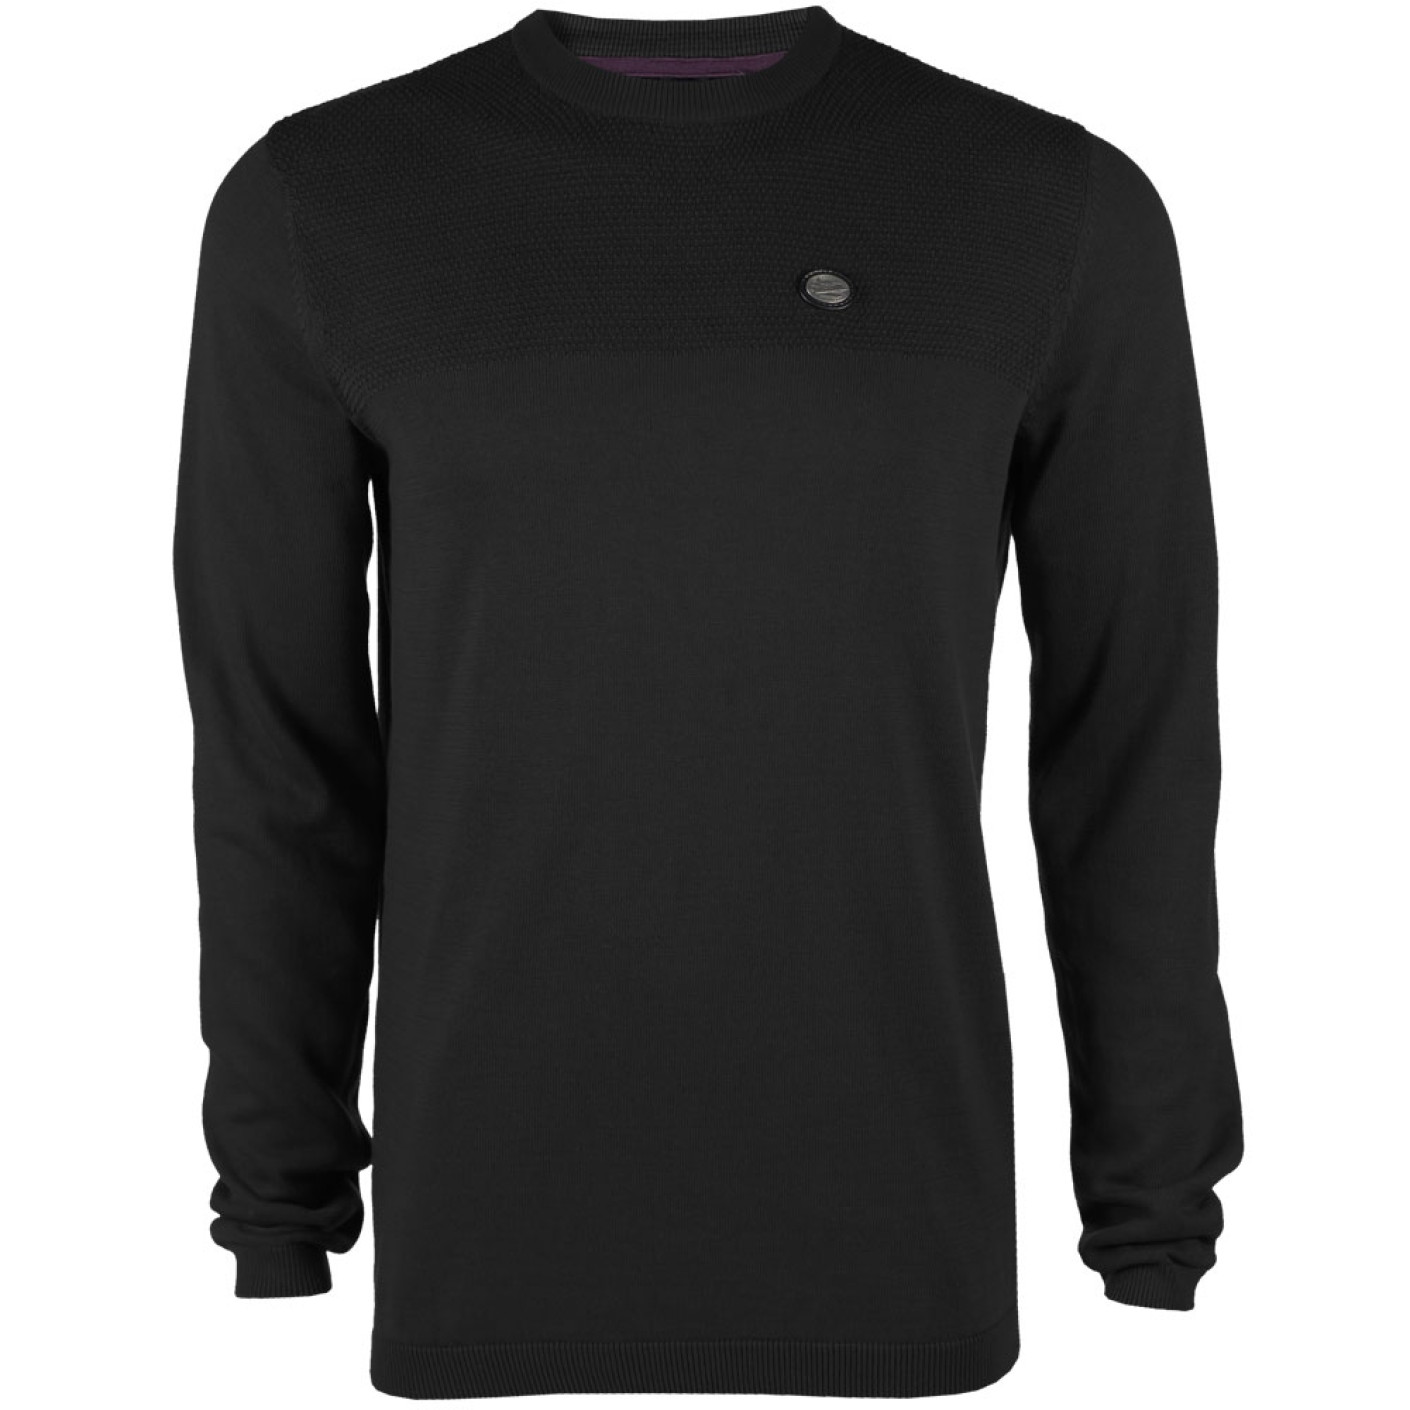 PSV Premium Sweater zwart AW19